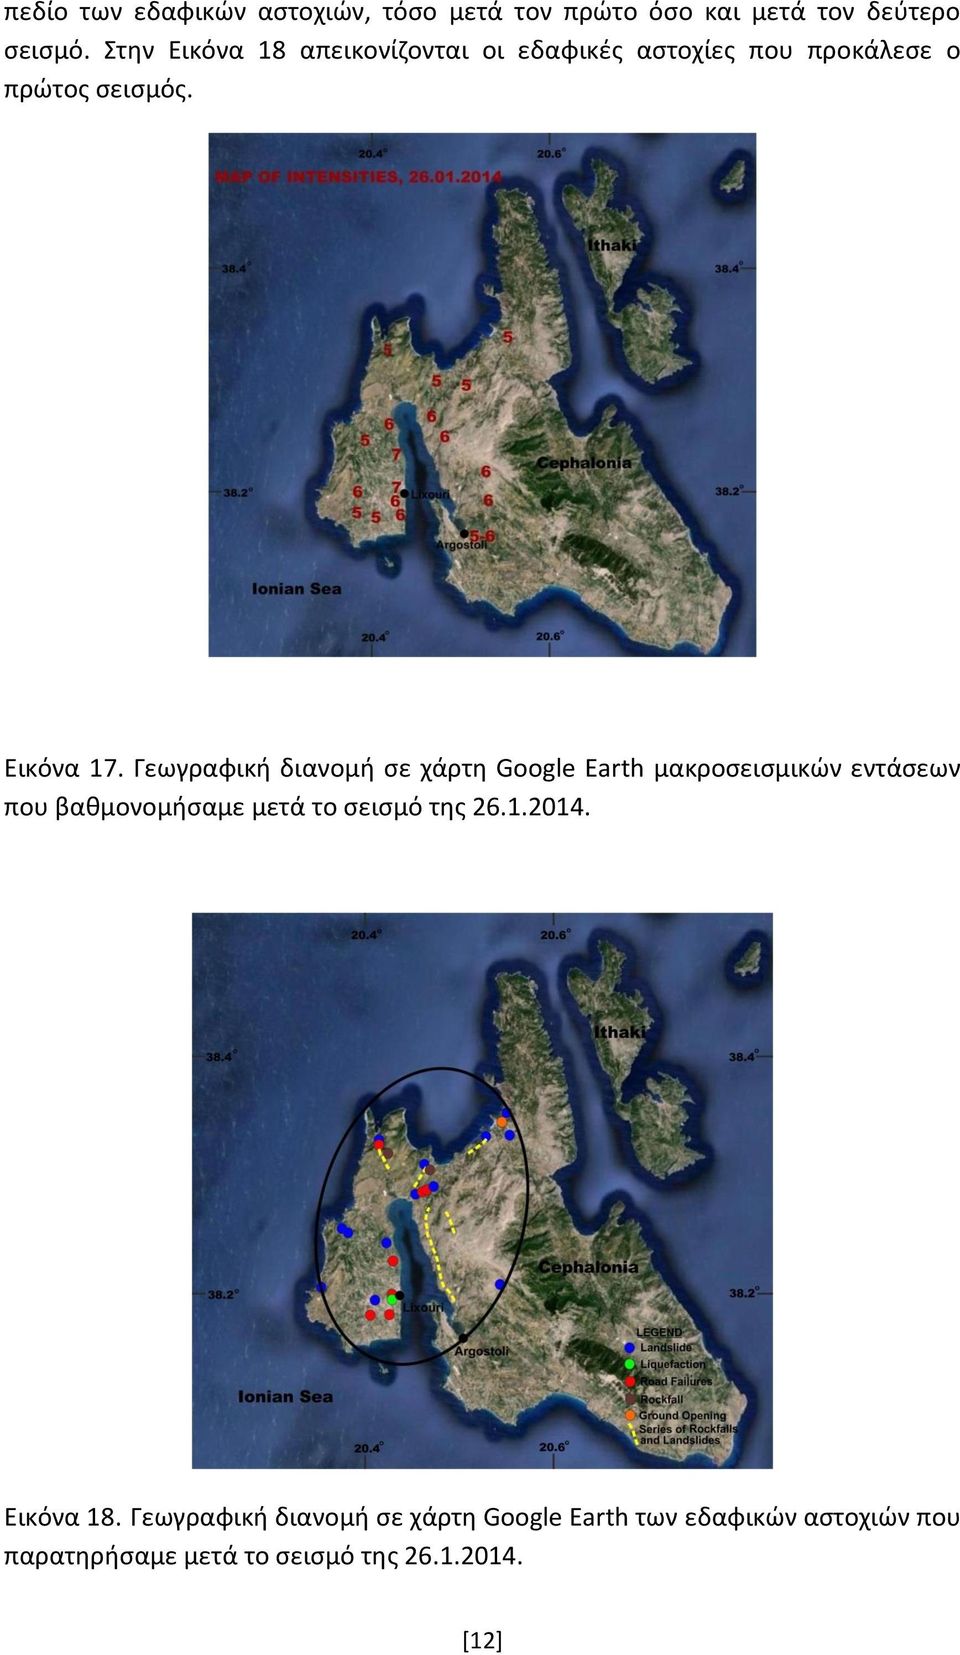 Γεωγραφική διανομή σε χάρτη Google Earth μακροσεισμικών εντάσεων που βαθμονομήσαμε μετά το σεισμό της